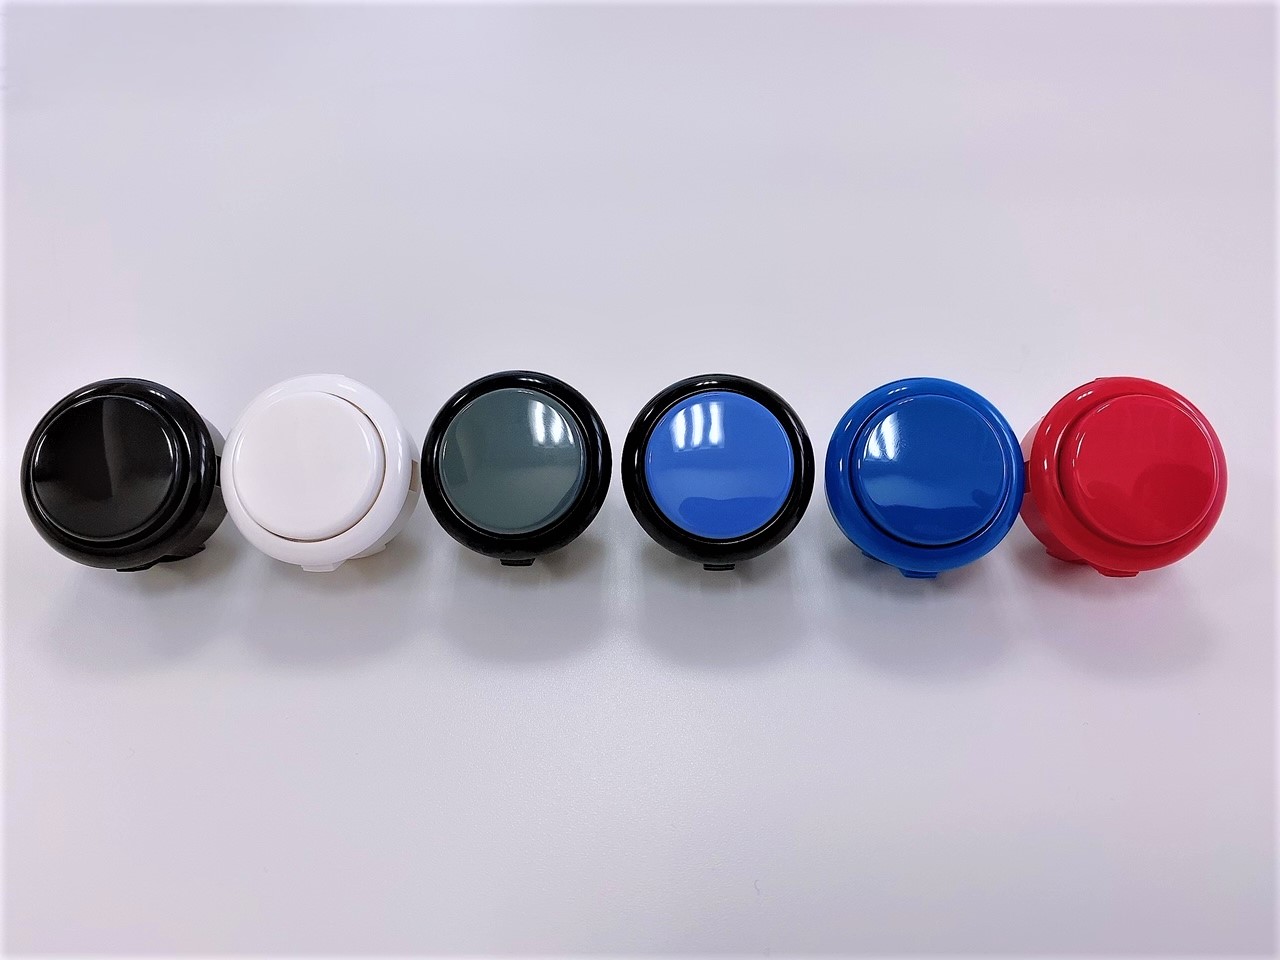 アケコン 三和エラストマー静音ボタン8個 黒ボディ灰色ボタン